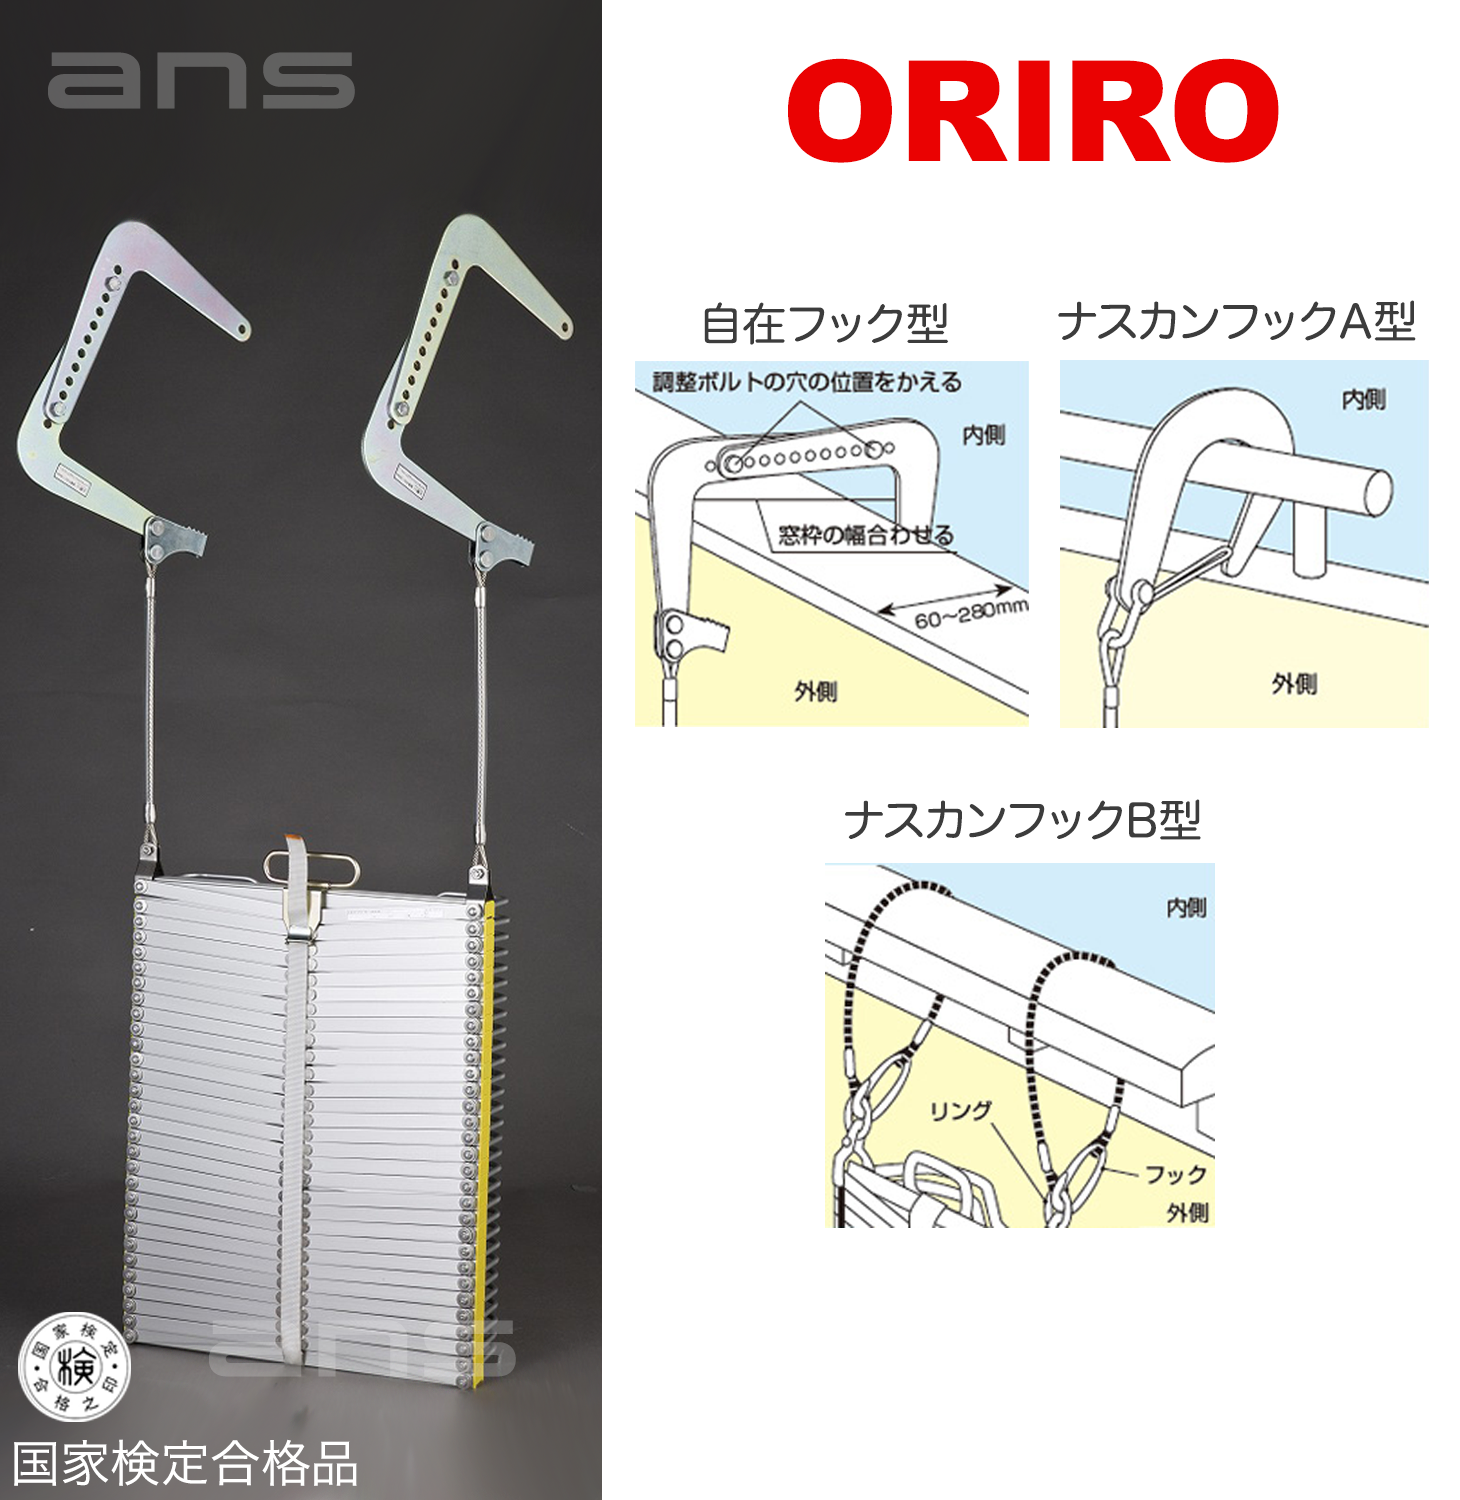 ORIROアルミ製避難はしご 10型。国家検定合格品。設置可能範囲の